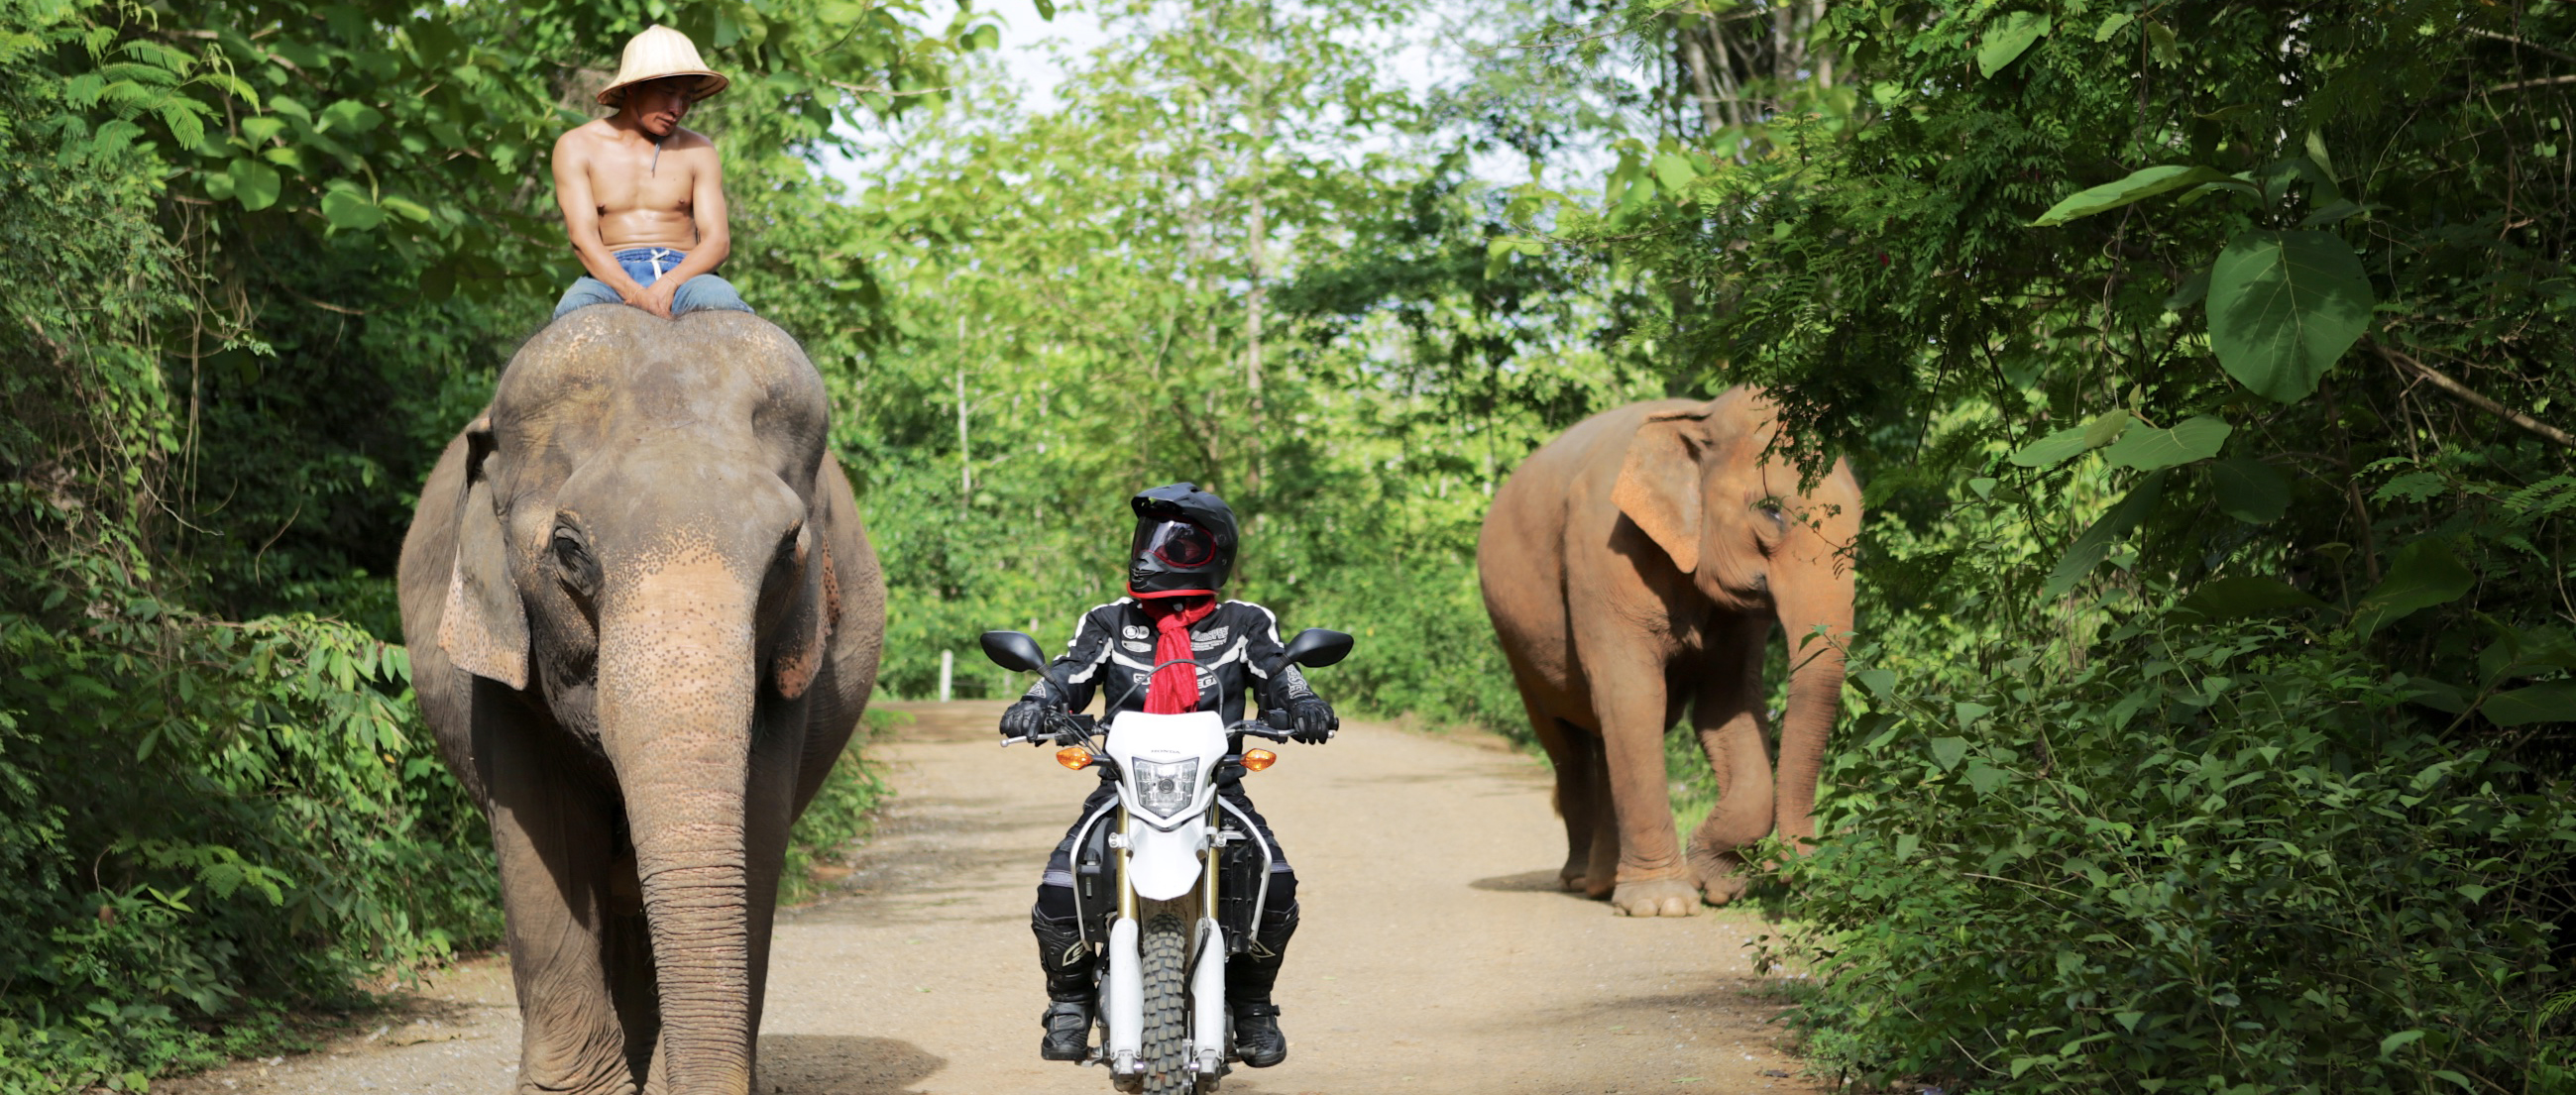 5 Day The Grey Elephant Motorbike Tour Laos